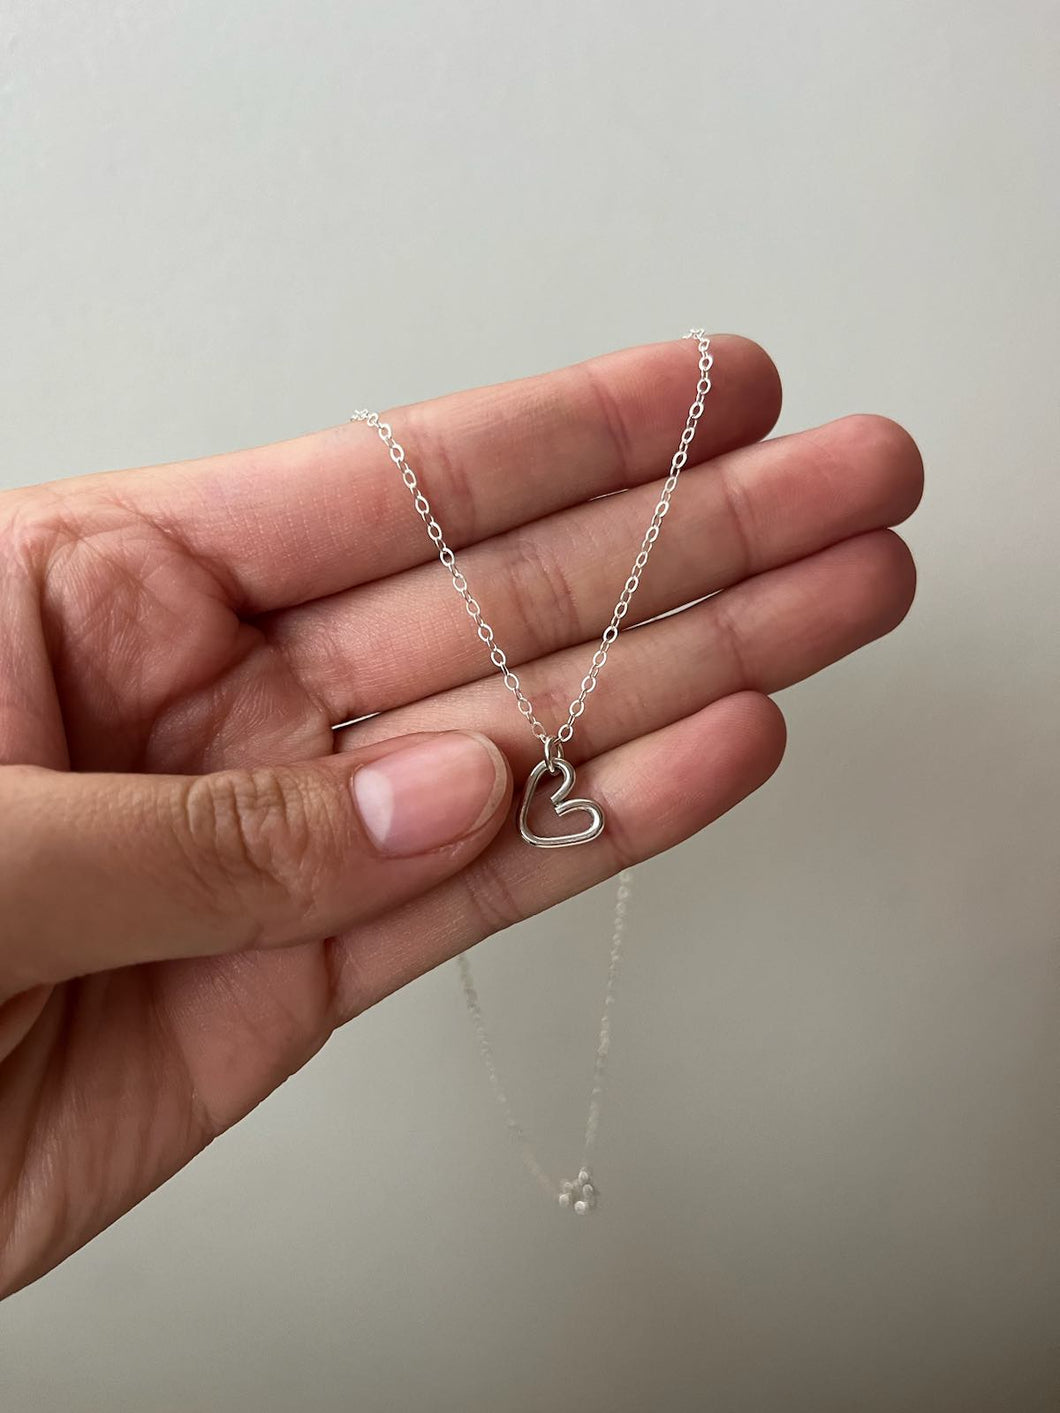 Tiny heart necklace- ready to ship